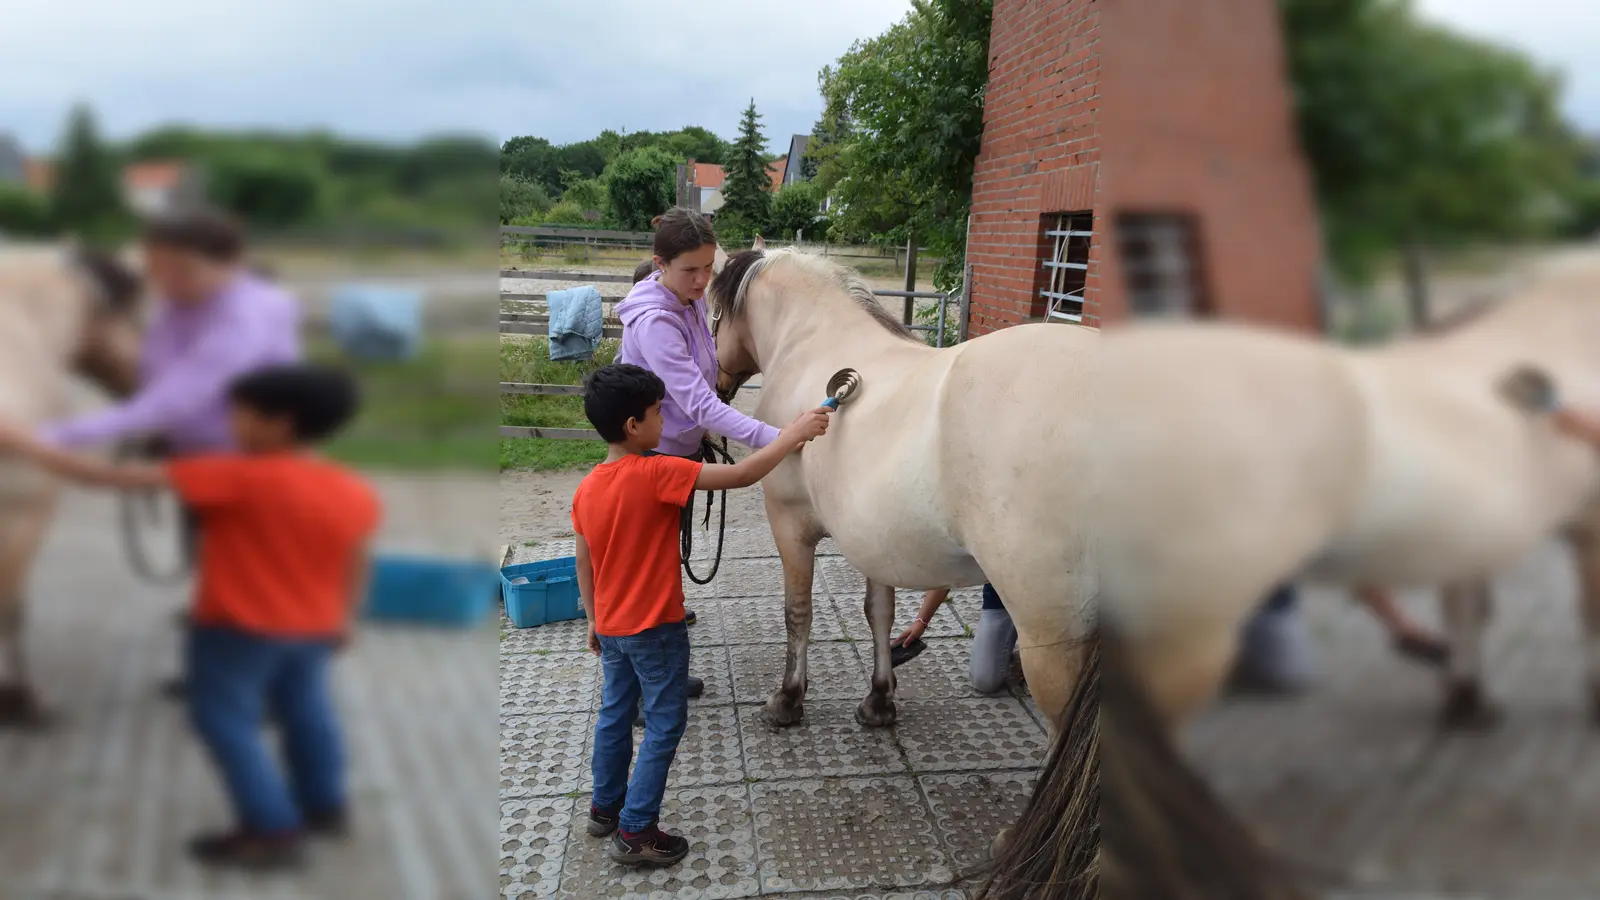 Erst die Arbeit - dann das Vergnügen. Amir (8) putzt das Fell von Pferdinand, bevor es auf den Reitplatz geht. (Foto: ab)